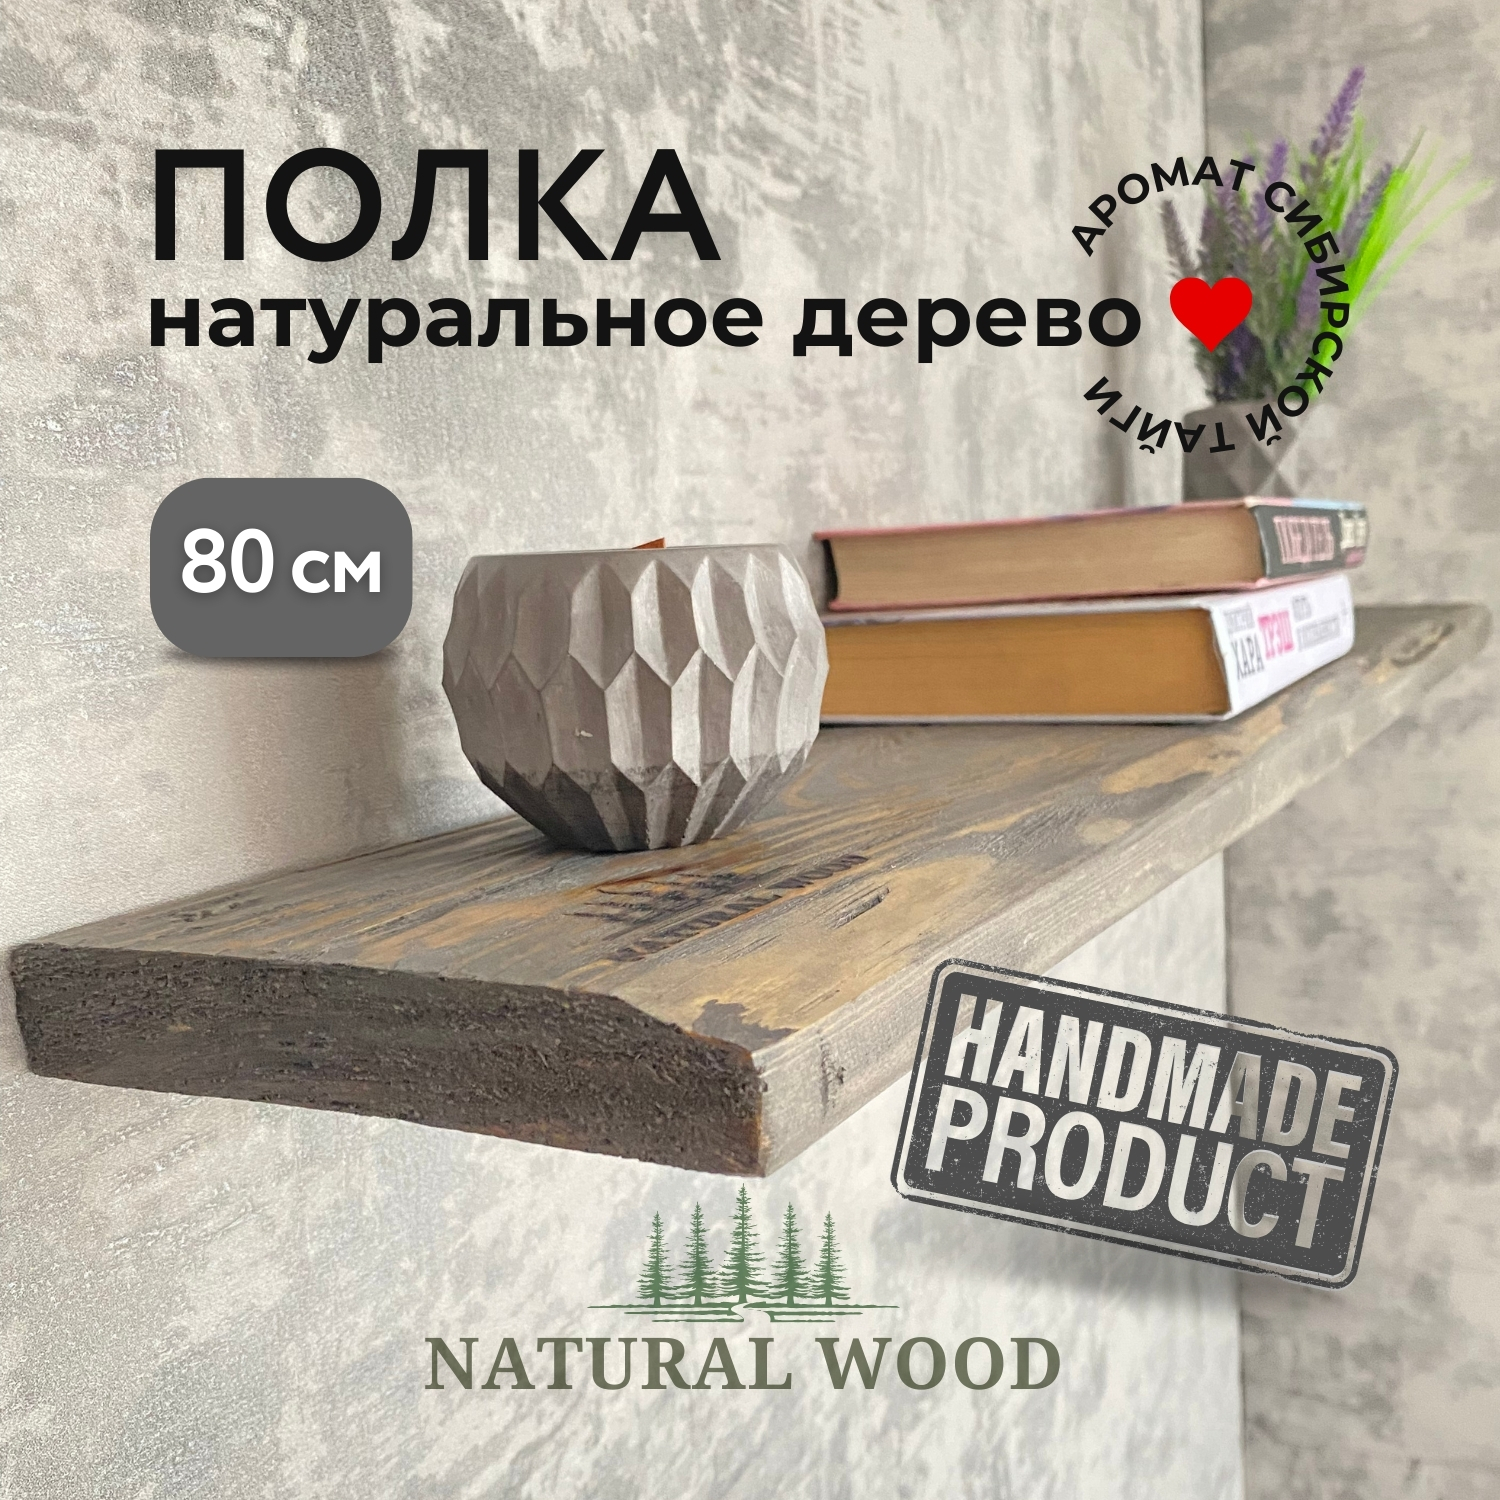 Полка настенная деревянная Natural wood 80 см